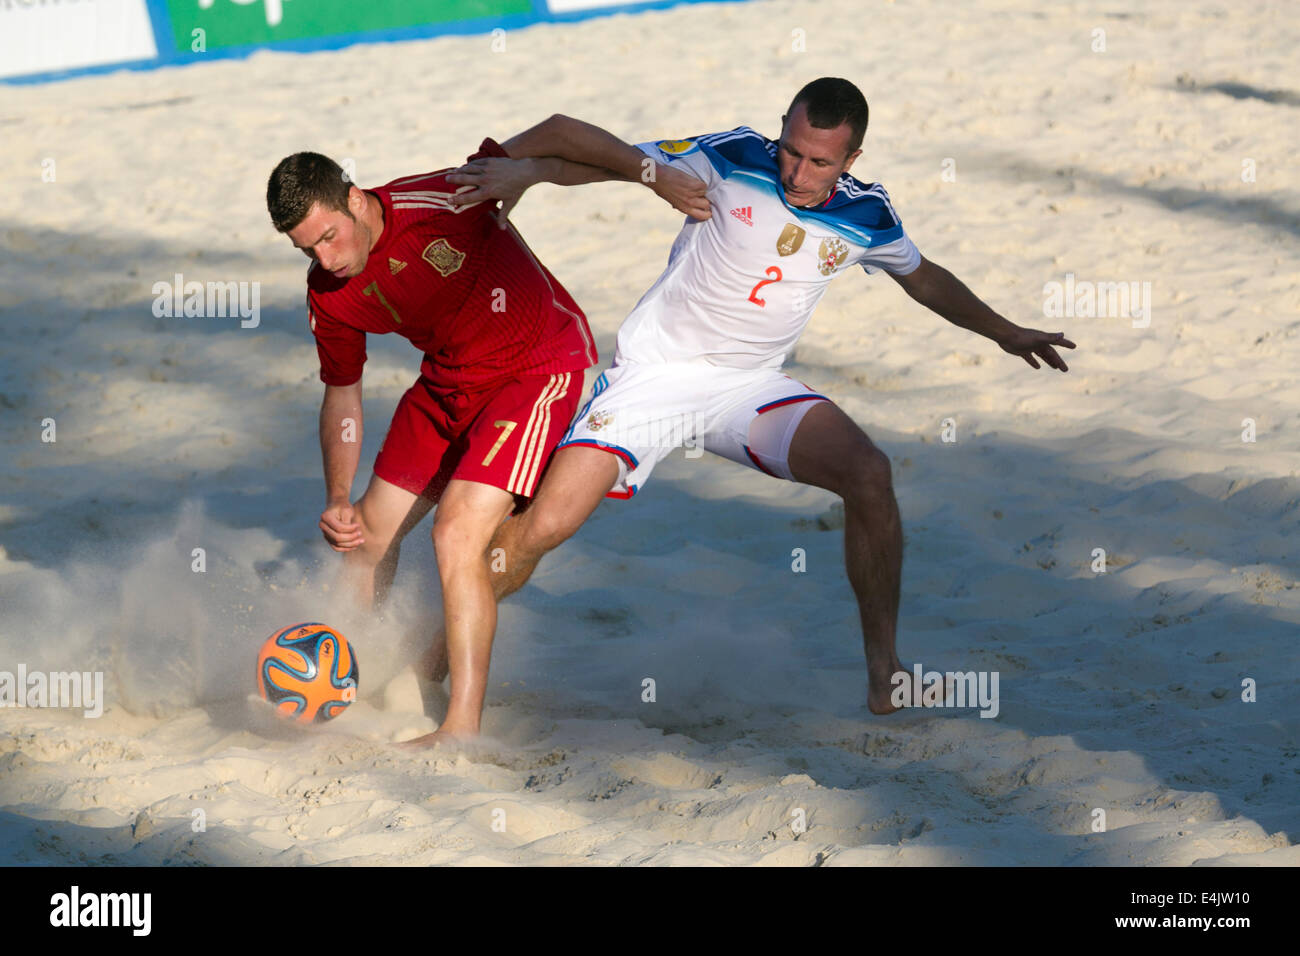 Moscou, Russie. Le 13 juillet, 2014. Euro Beach Soccer League, tournoi stade de Moscou. Match entre la Russie et l'Espagne Banque D'Images